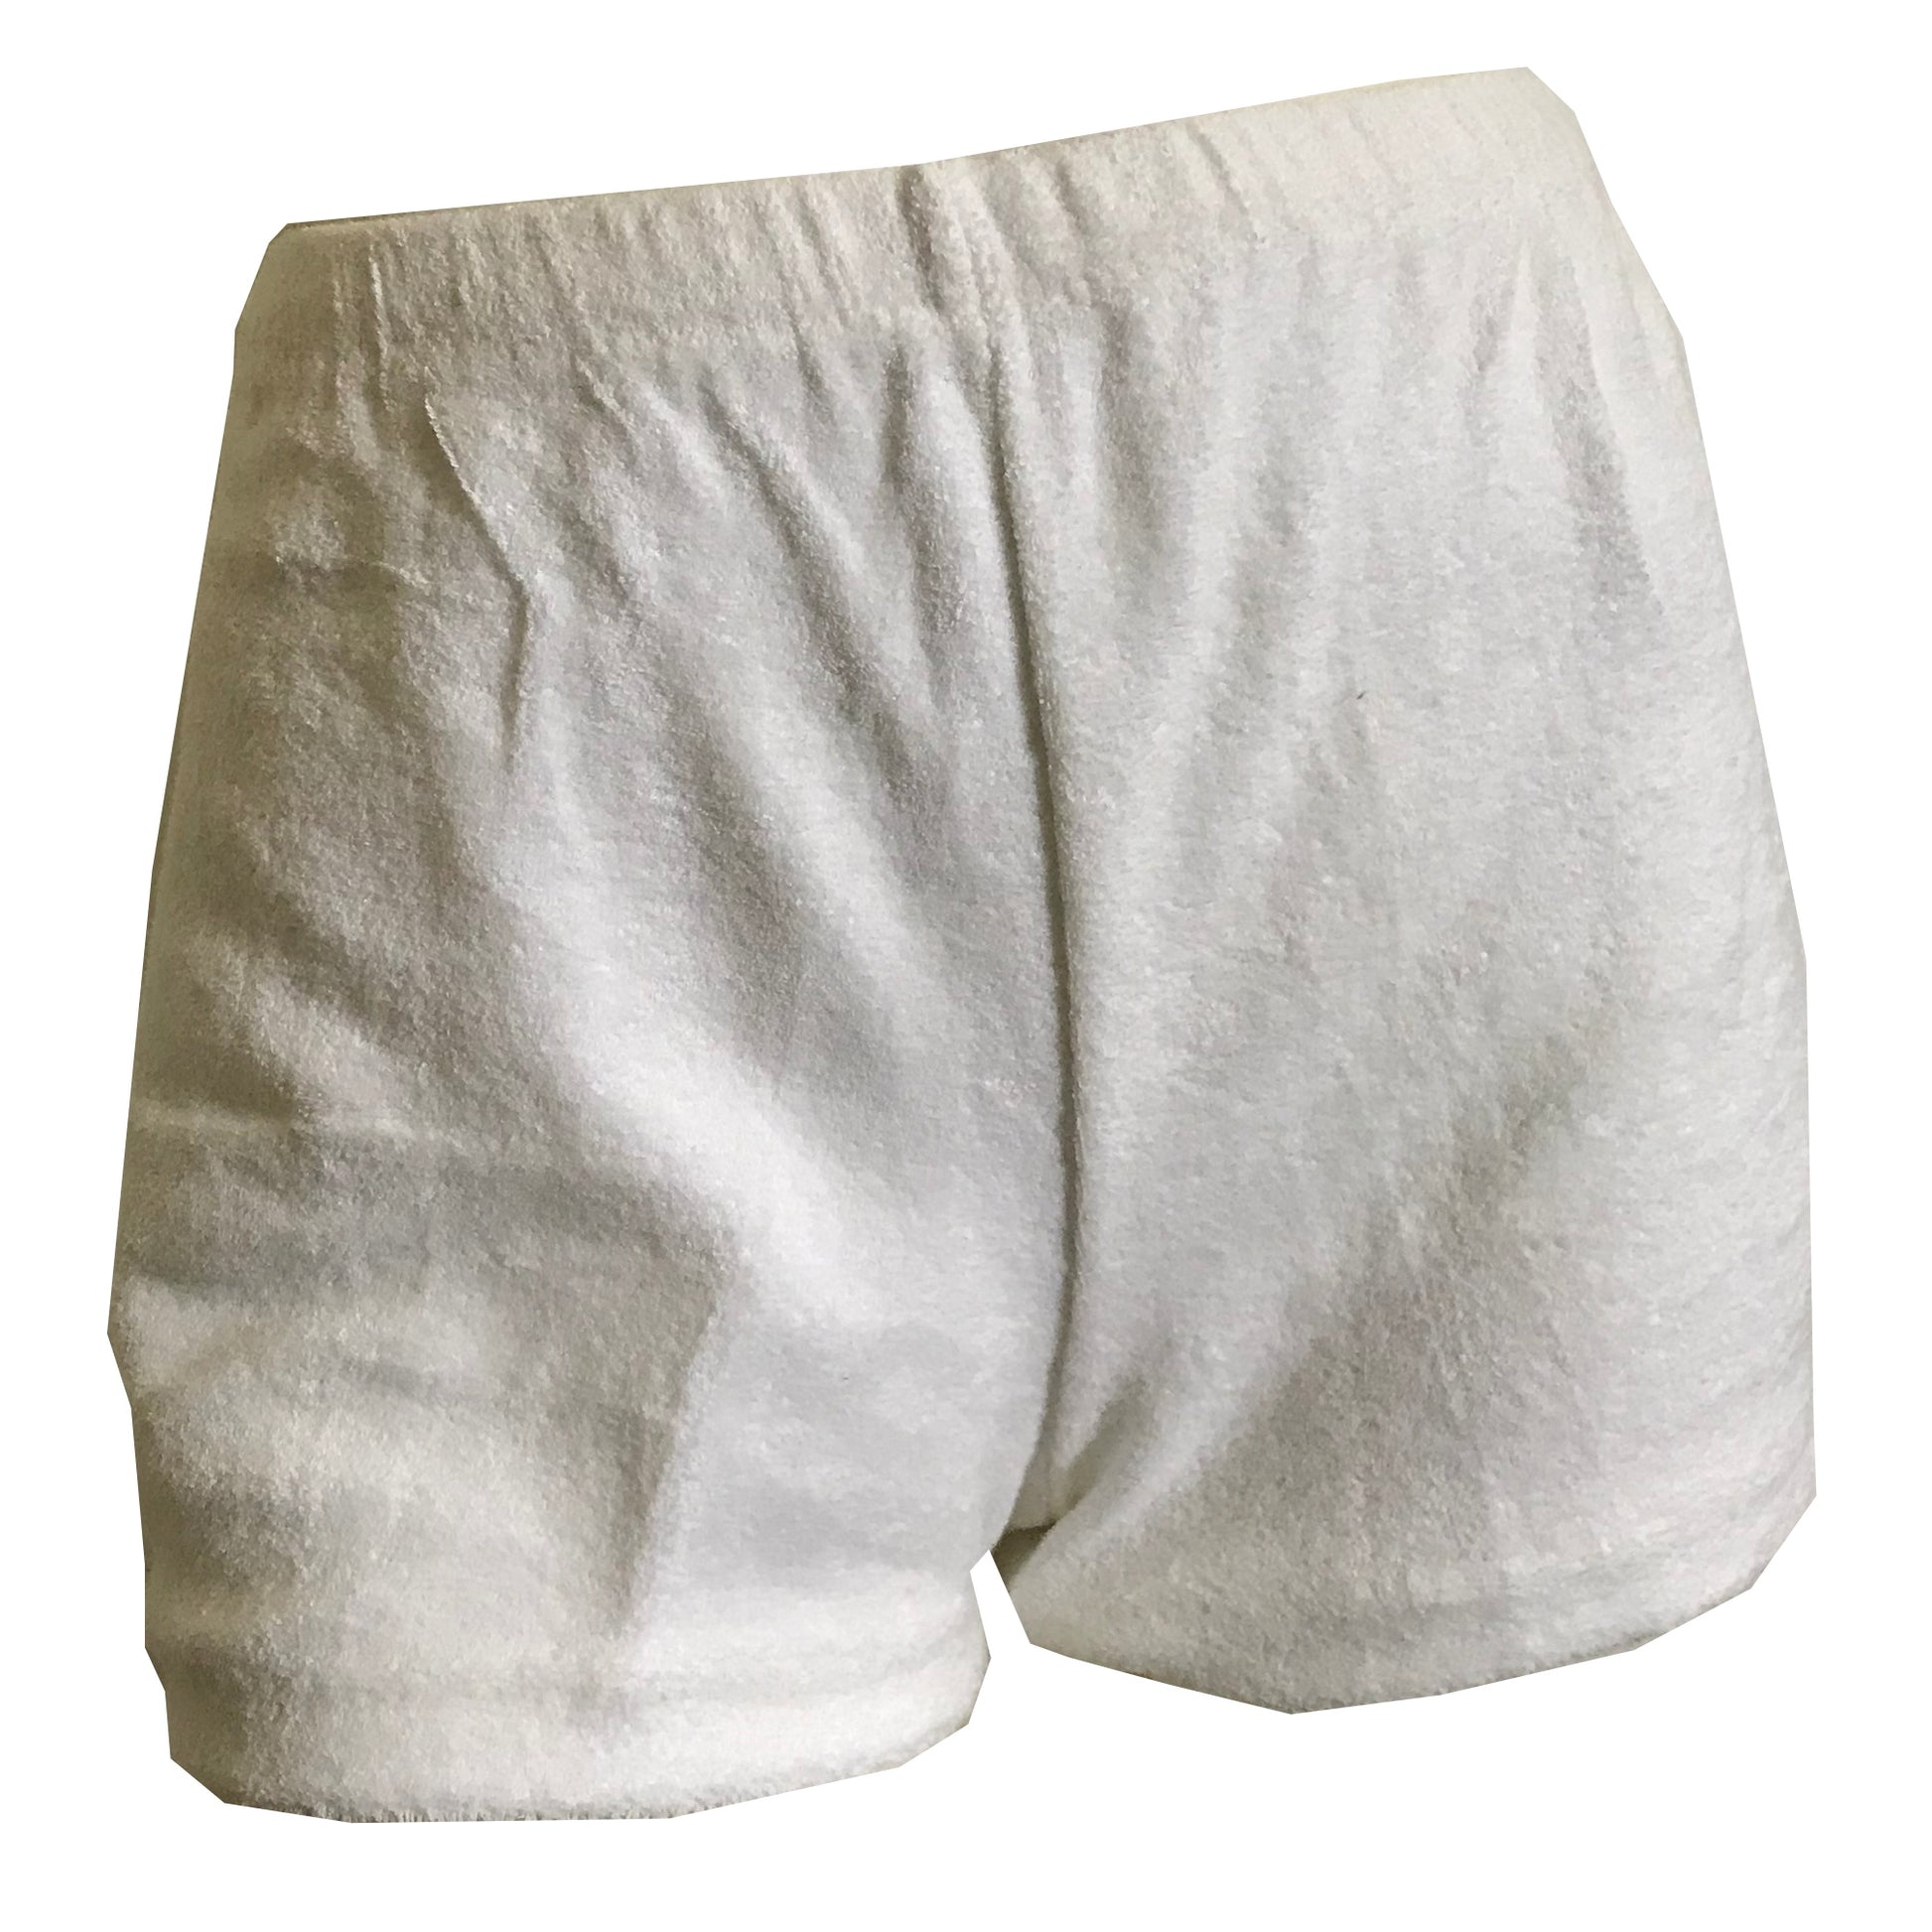 White Cotton Terry Cloth Short Shorts circa 1970s – Dorothea's